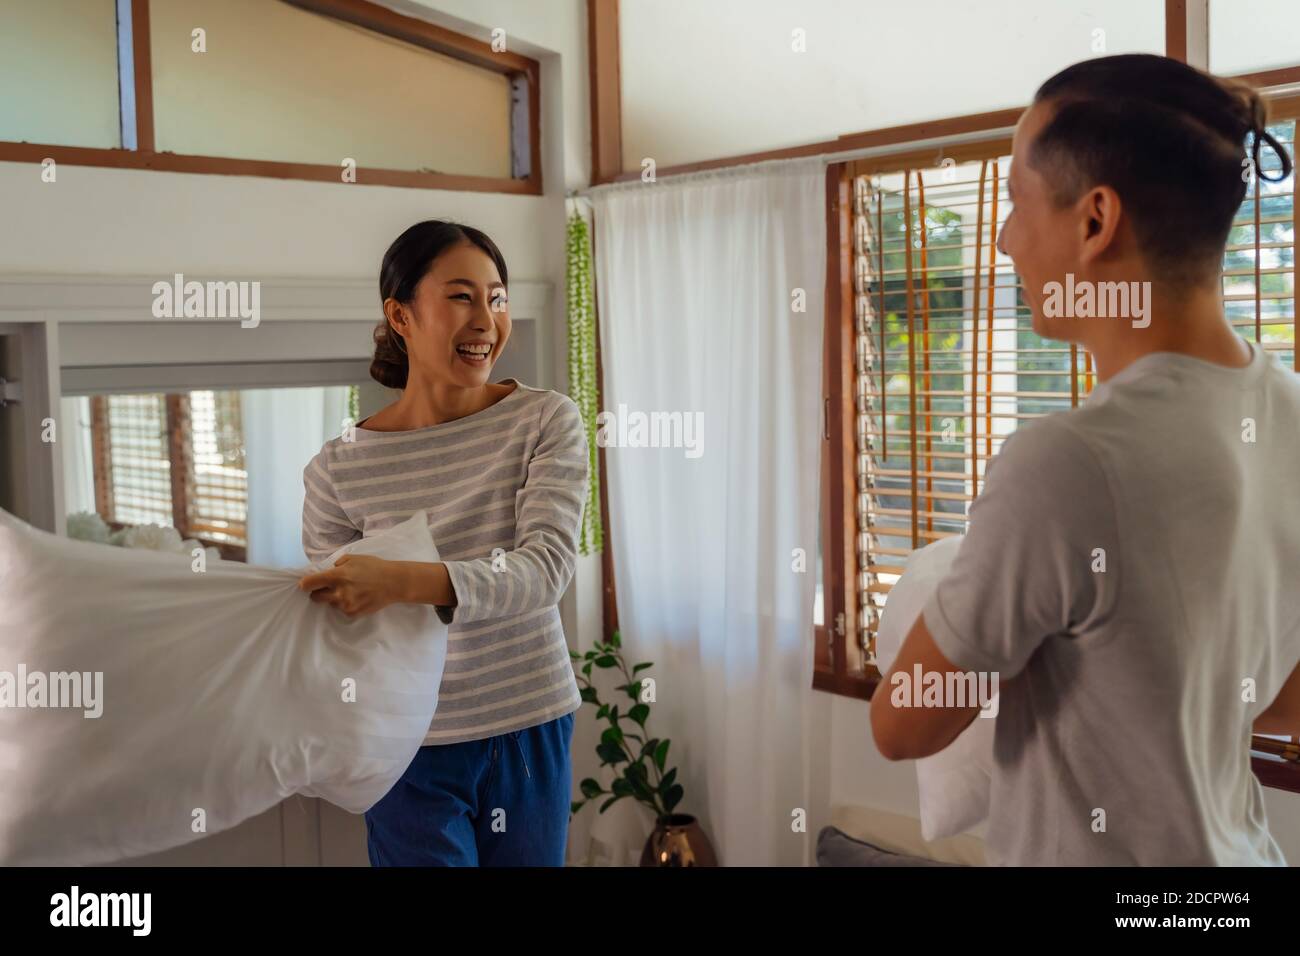 Portrait von jungen erwachsenen asiatischen Paar spielen Kissen Kampf im Schlafzimmer Innenleben Szene. 30s reifen Mann und Frau lächeln und mit einer lustigen Aktivität. Ehe und glückliche Beziehung Leben Konzept Stockfoto